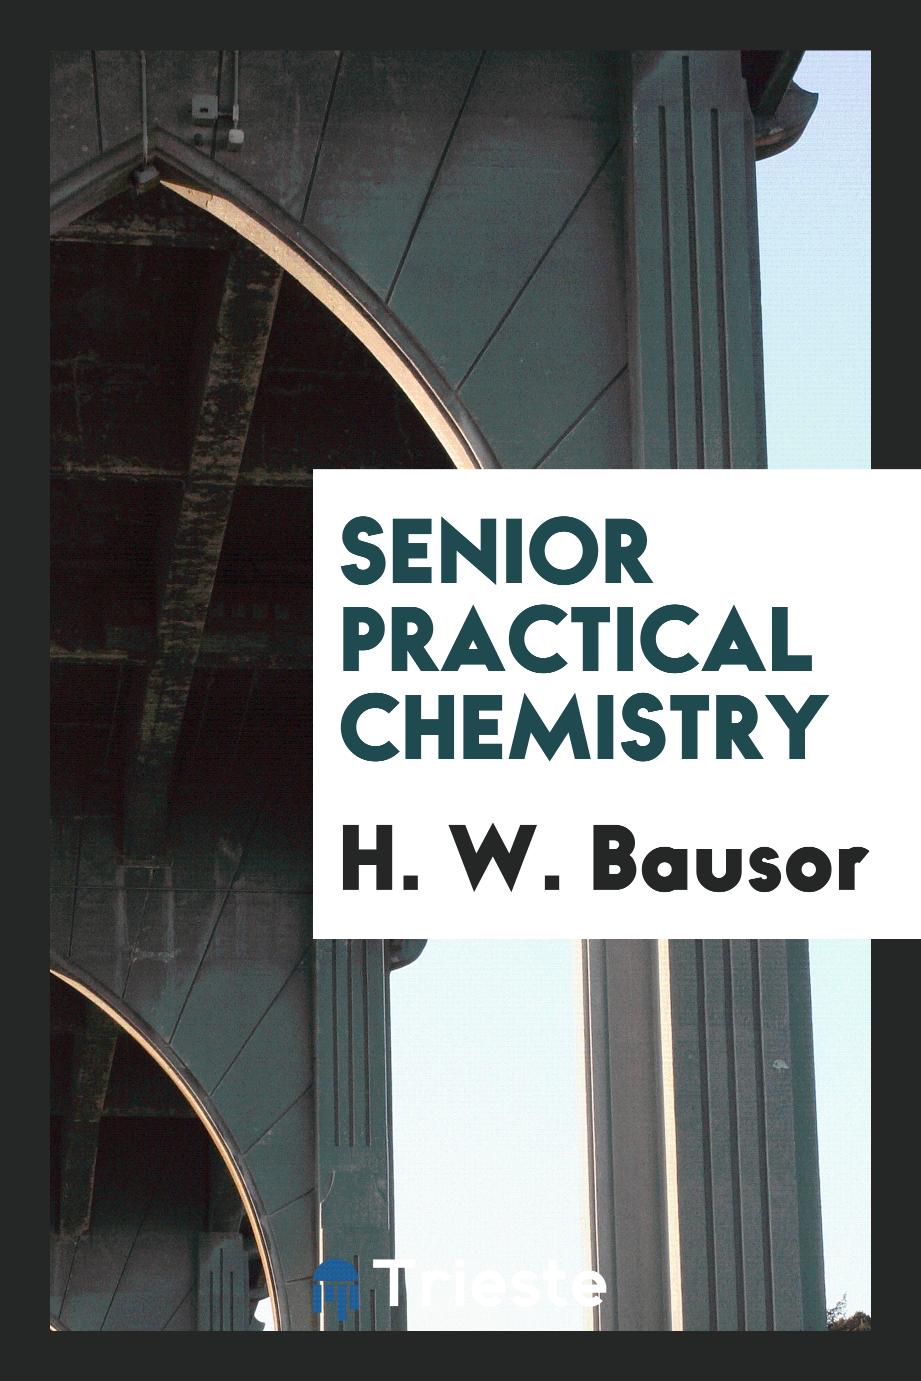 Senior practical chemistry